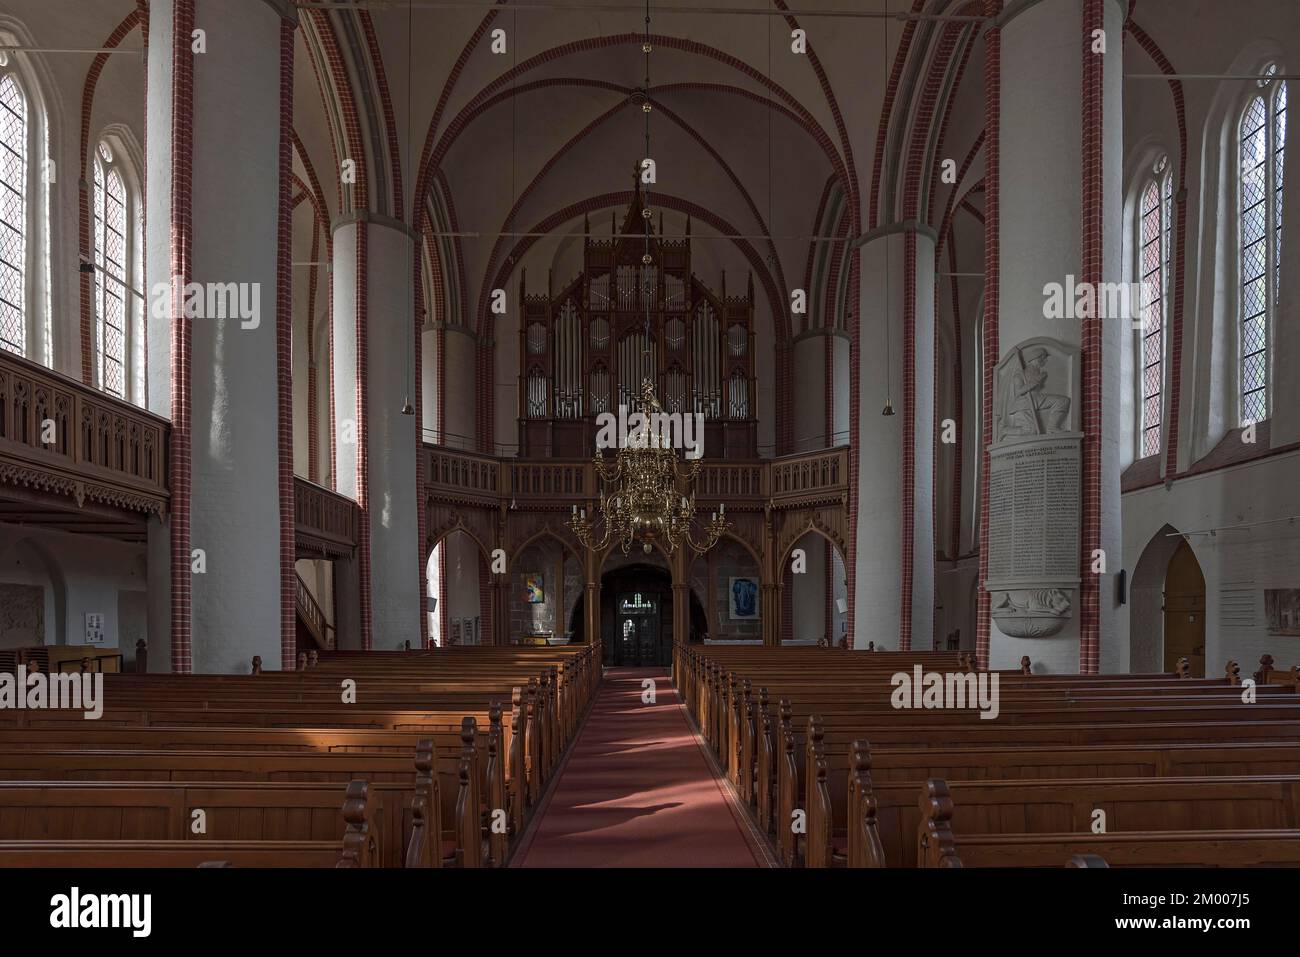 Intérieur avec loft d'orgue, cathédrale de Bardowick, Bardowick, Basse-Saxe, Allemagne, Europe Banque D'Images